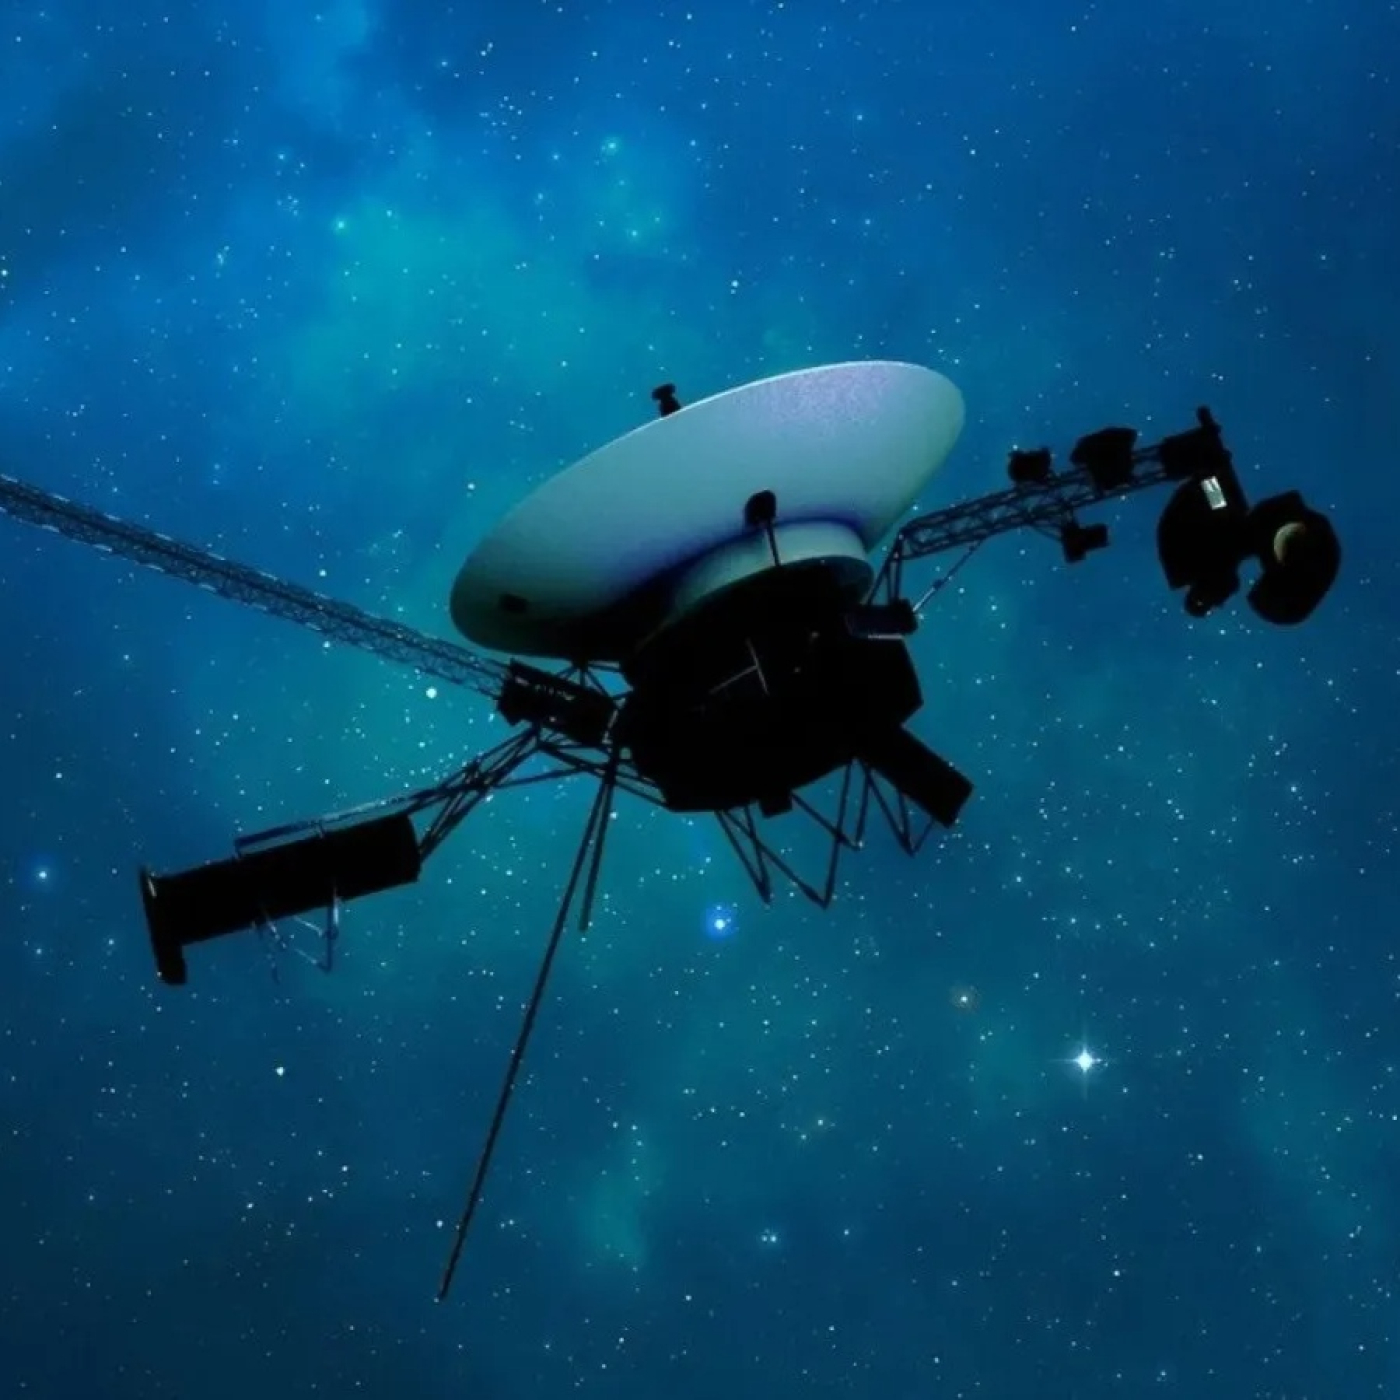 1005 - Descubren un posible nuevo planeta interestelar - Reestablecen el contacto con Voyager 1 - y... Teoría del Todo